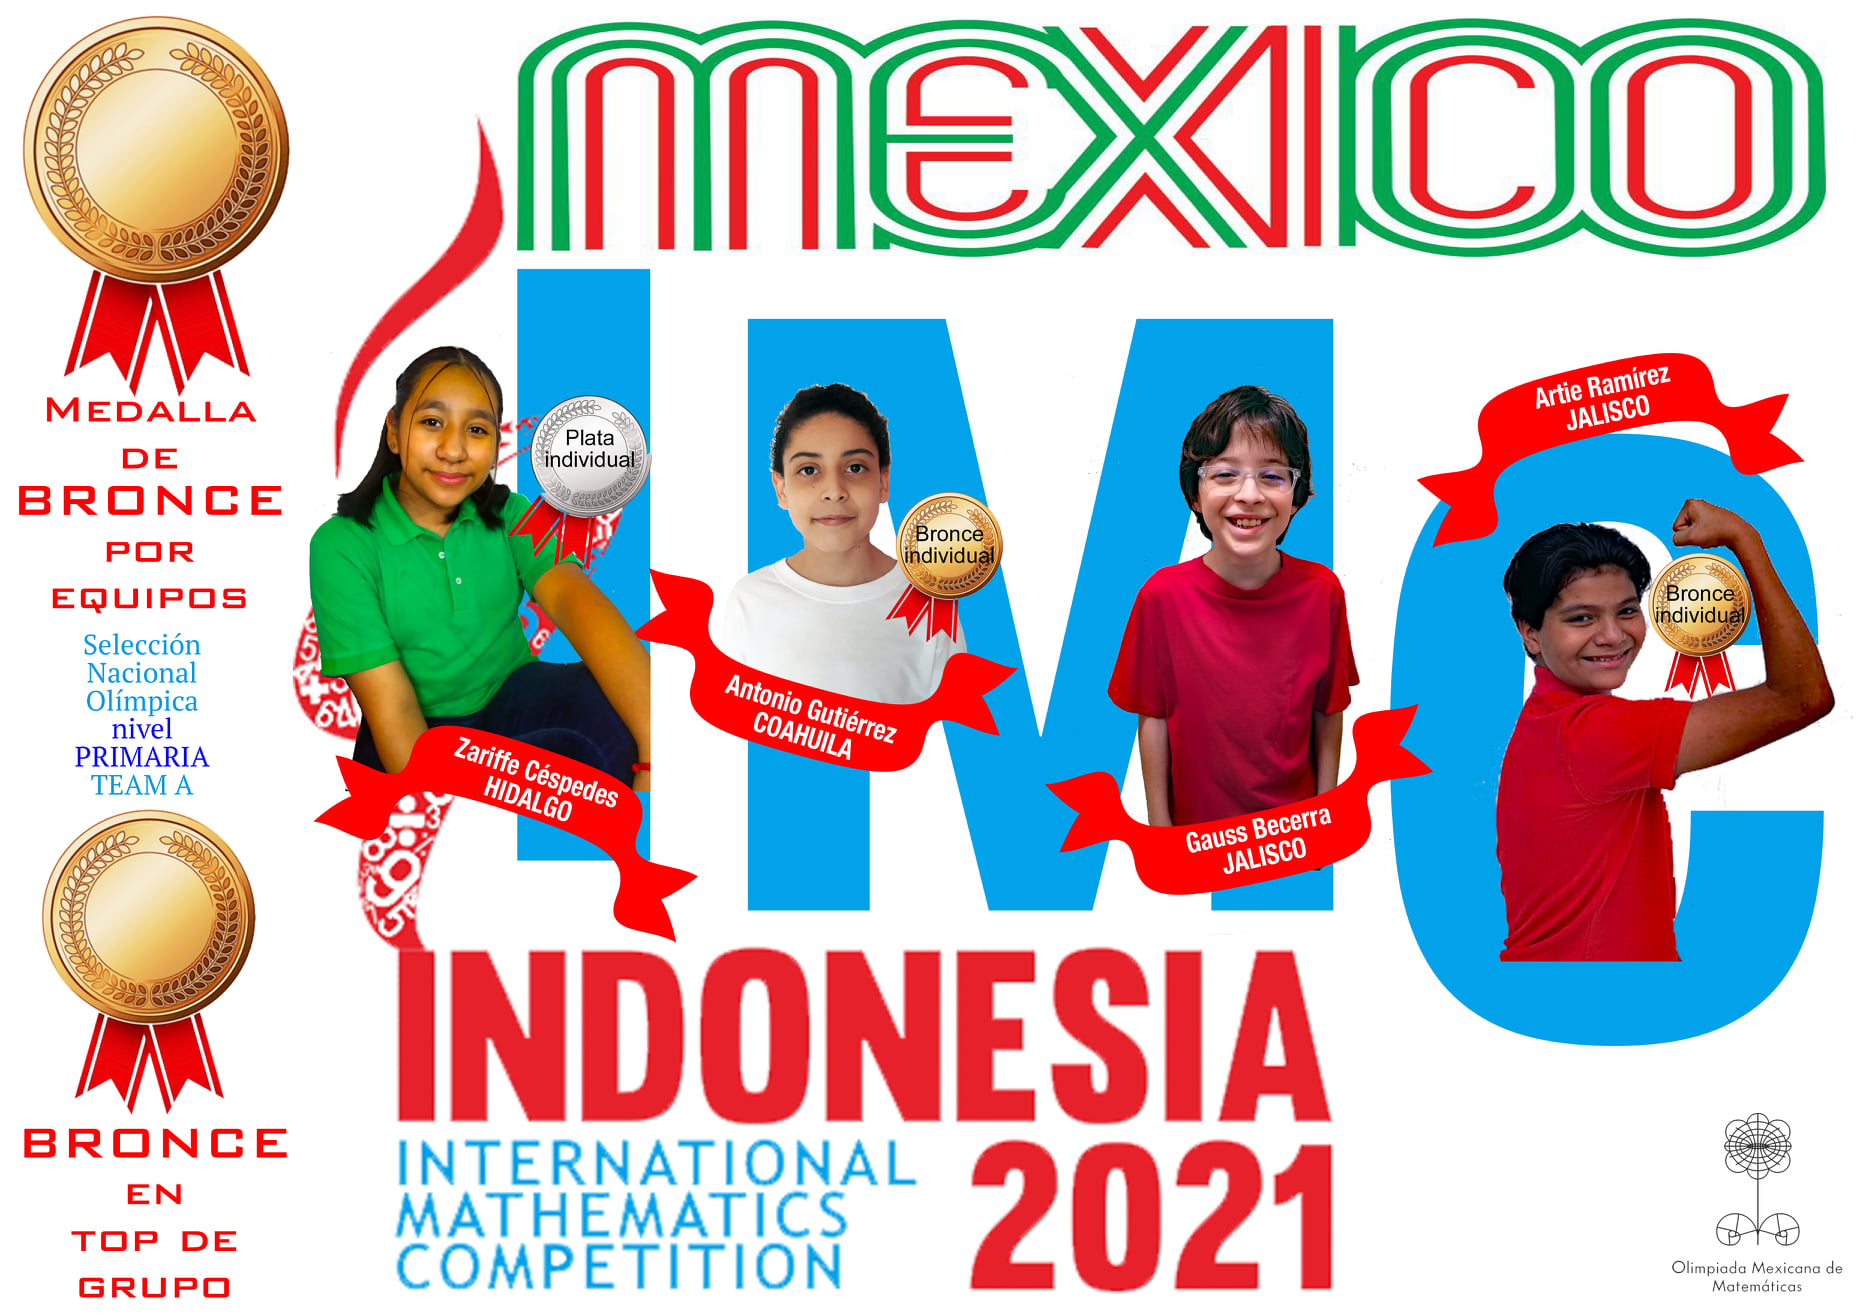 ¡Otra medalla para México! Niño de 11 de años gana oro en Competencia Internacional de Matemáticas